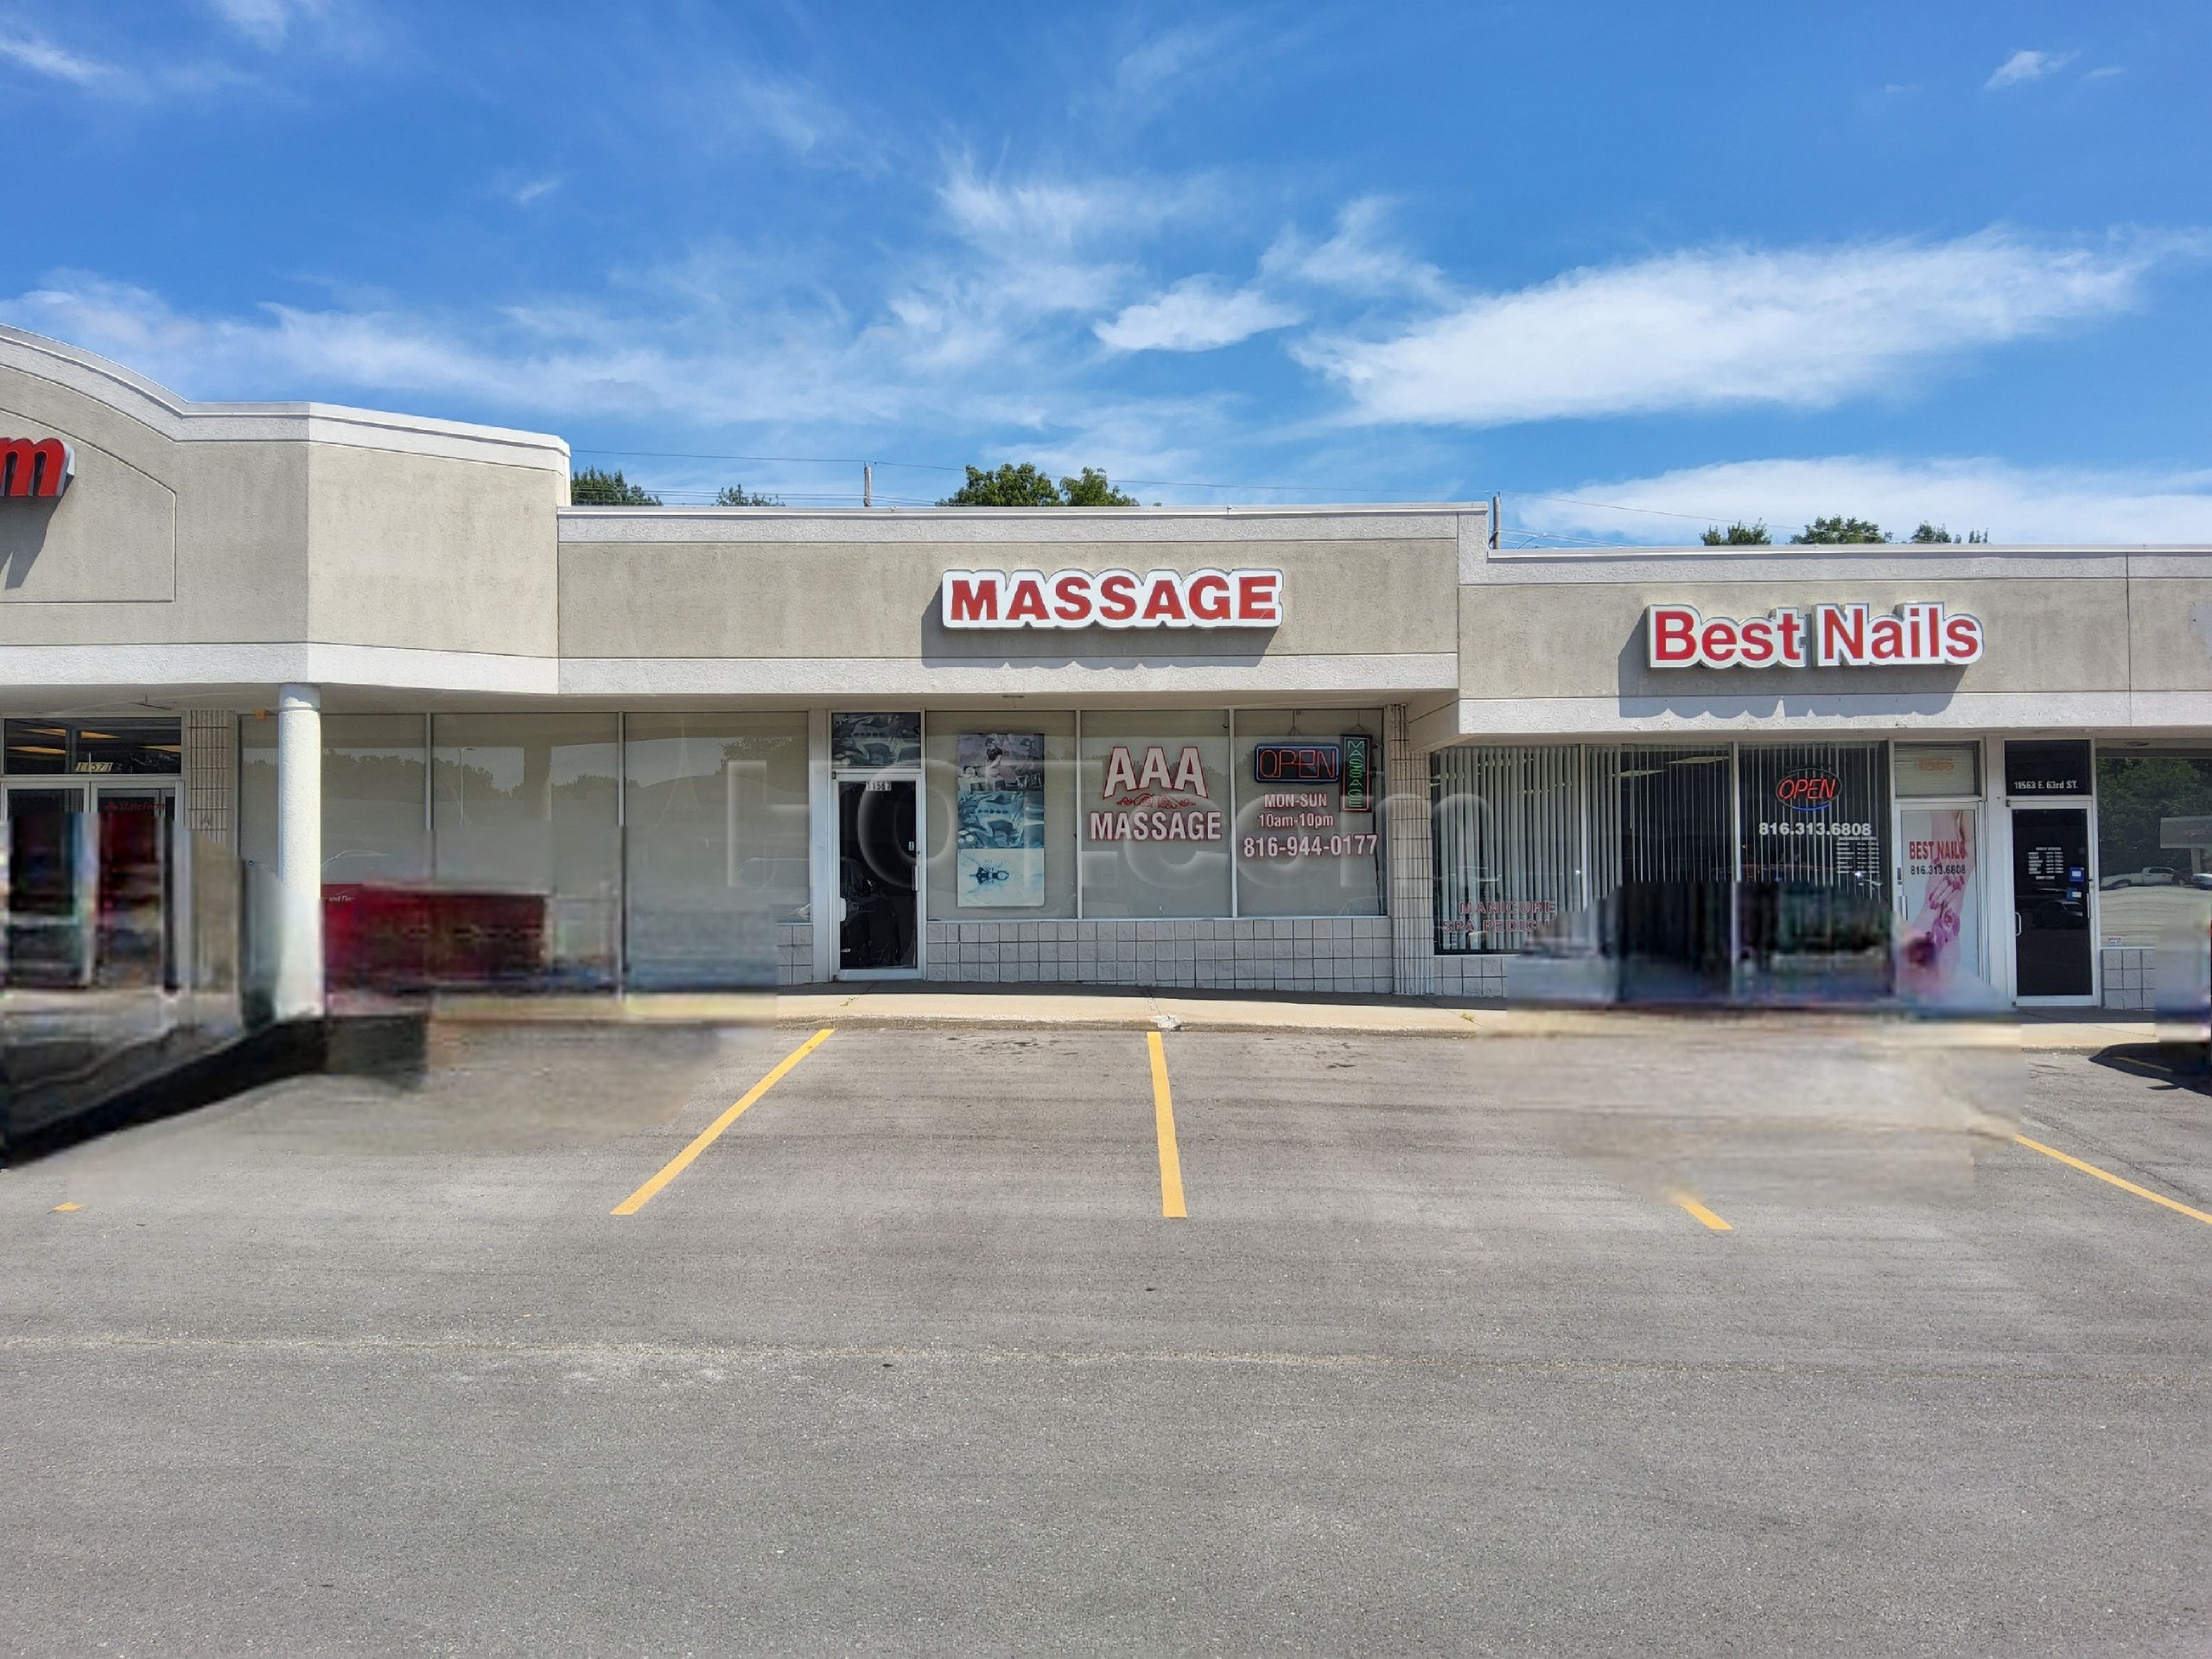 Raytown, Missouri AAA Massage